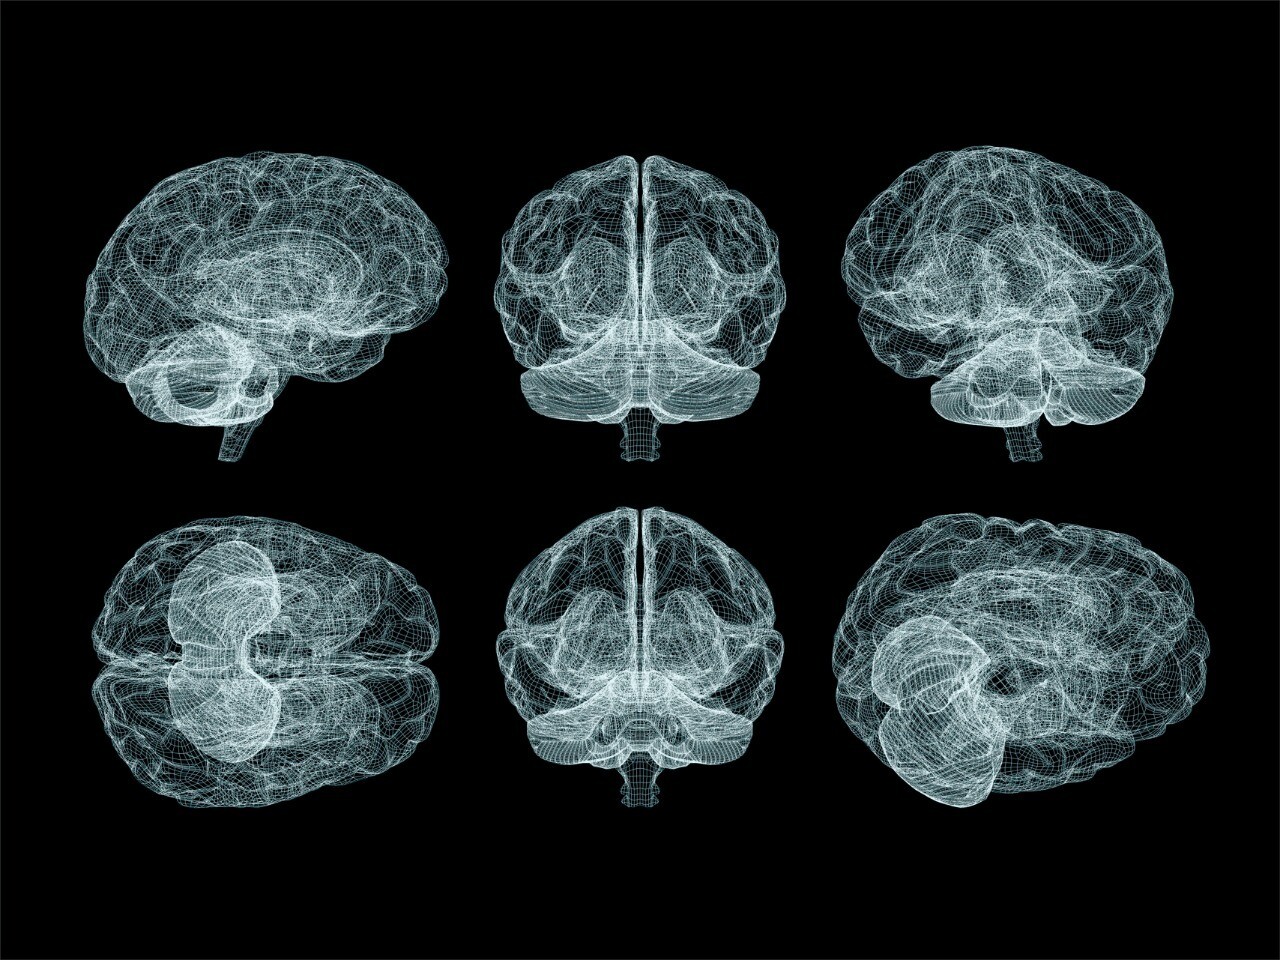 Что такое глиоз головного мозга и сколько живут с этой болезнью